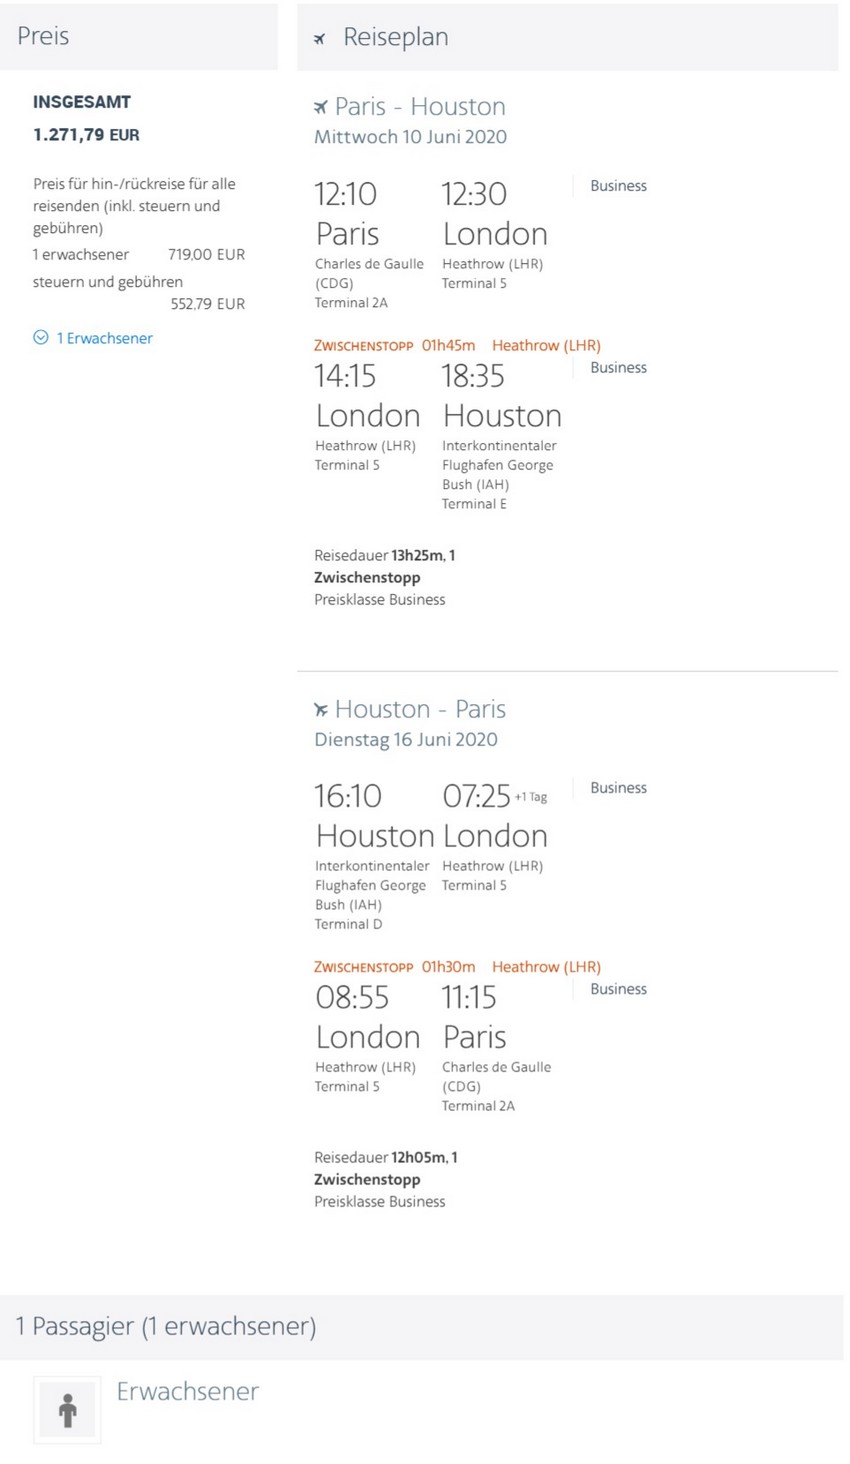 Preisbeispiel von Paris nach Houston in der British Airways Business-Class